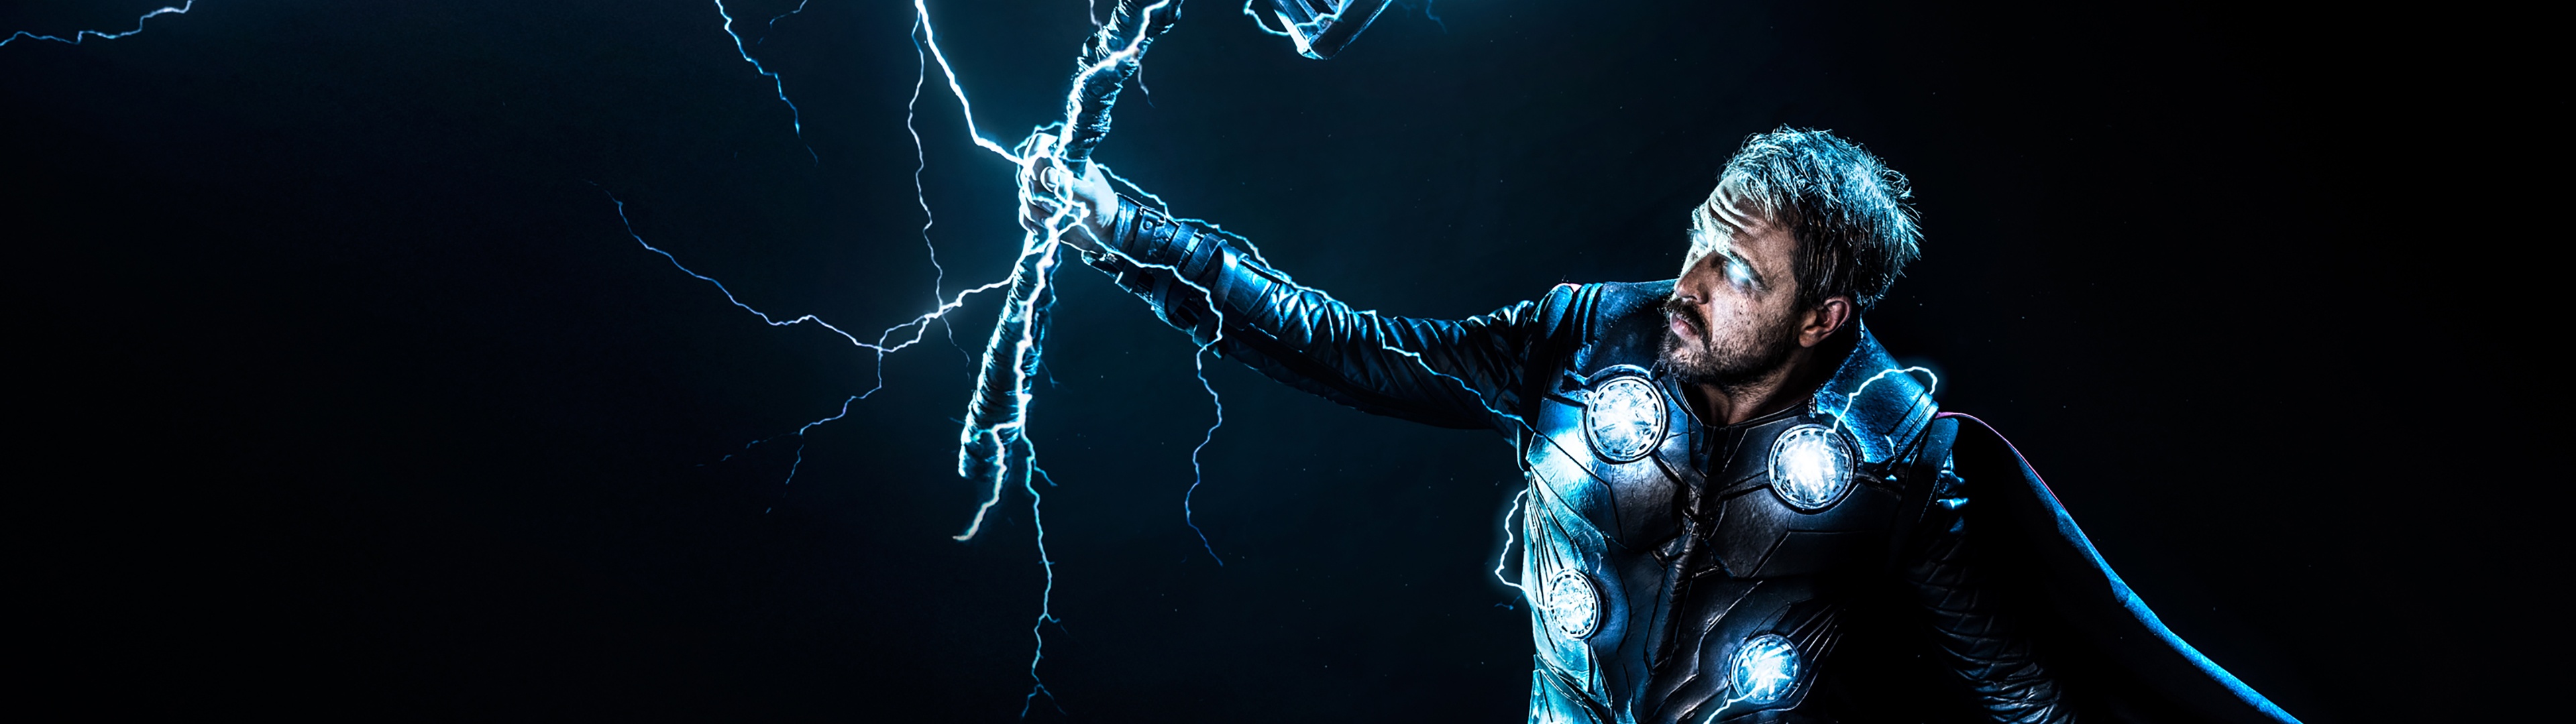 Tải ngay hình nền Thor God of Thunder đầy sức mạnh và uy lực để trang trí cho điện thoại hoặc máy tính của bạn!